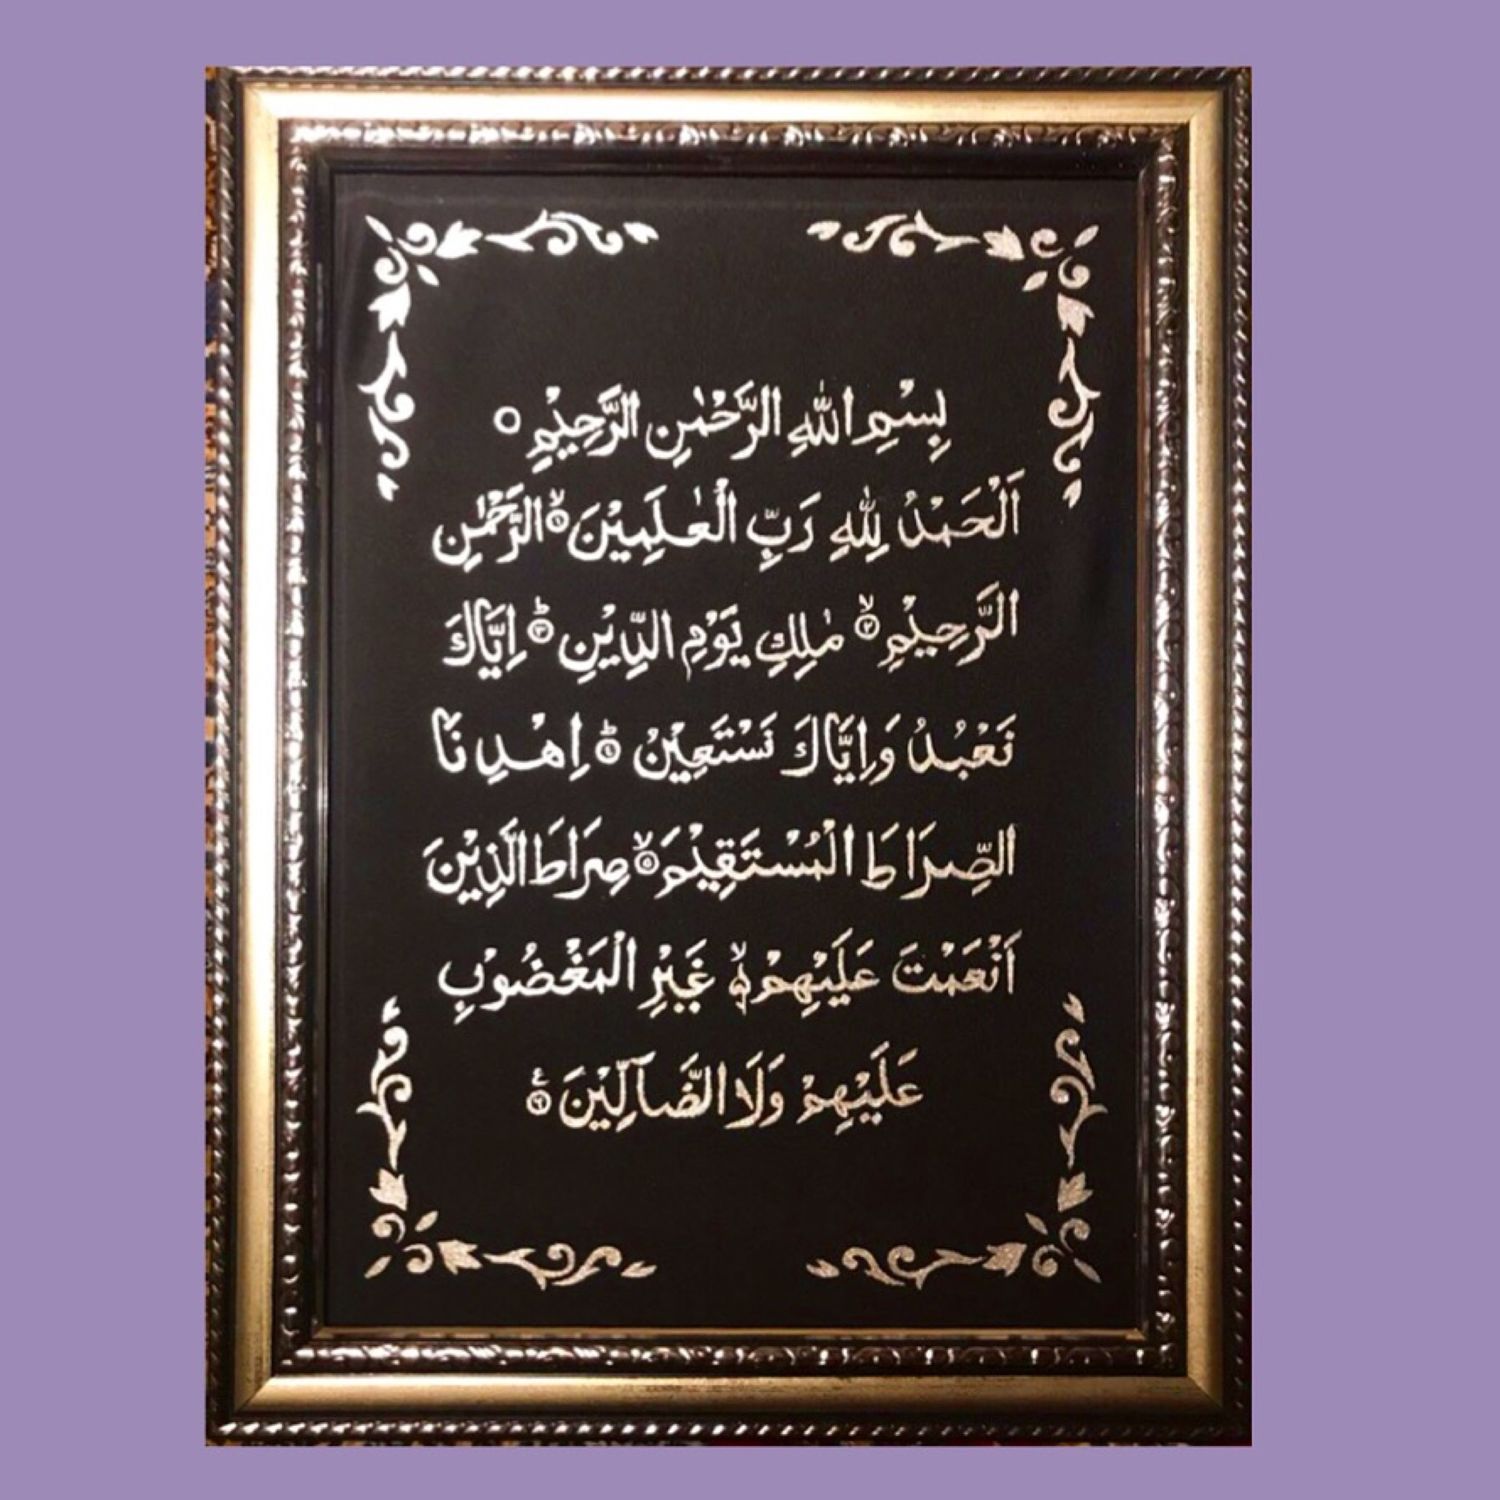 Мусульманская фатиха. Сура Аль Фатиха. Сура Аль Фатиха каллиграфия. Первая Сура Корана. Коран Сура Аль Фатиха на арабском.